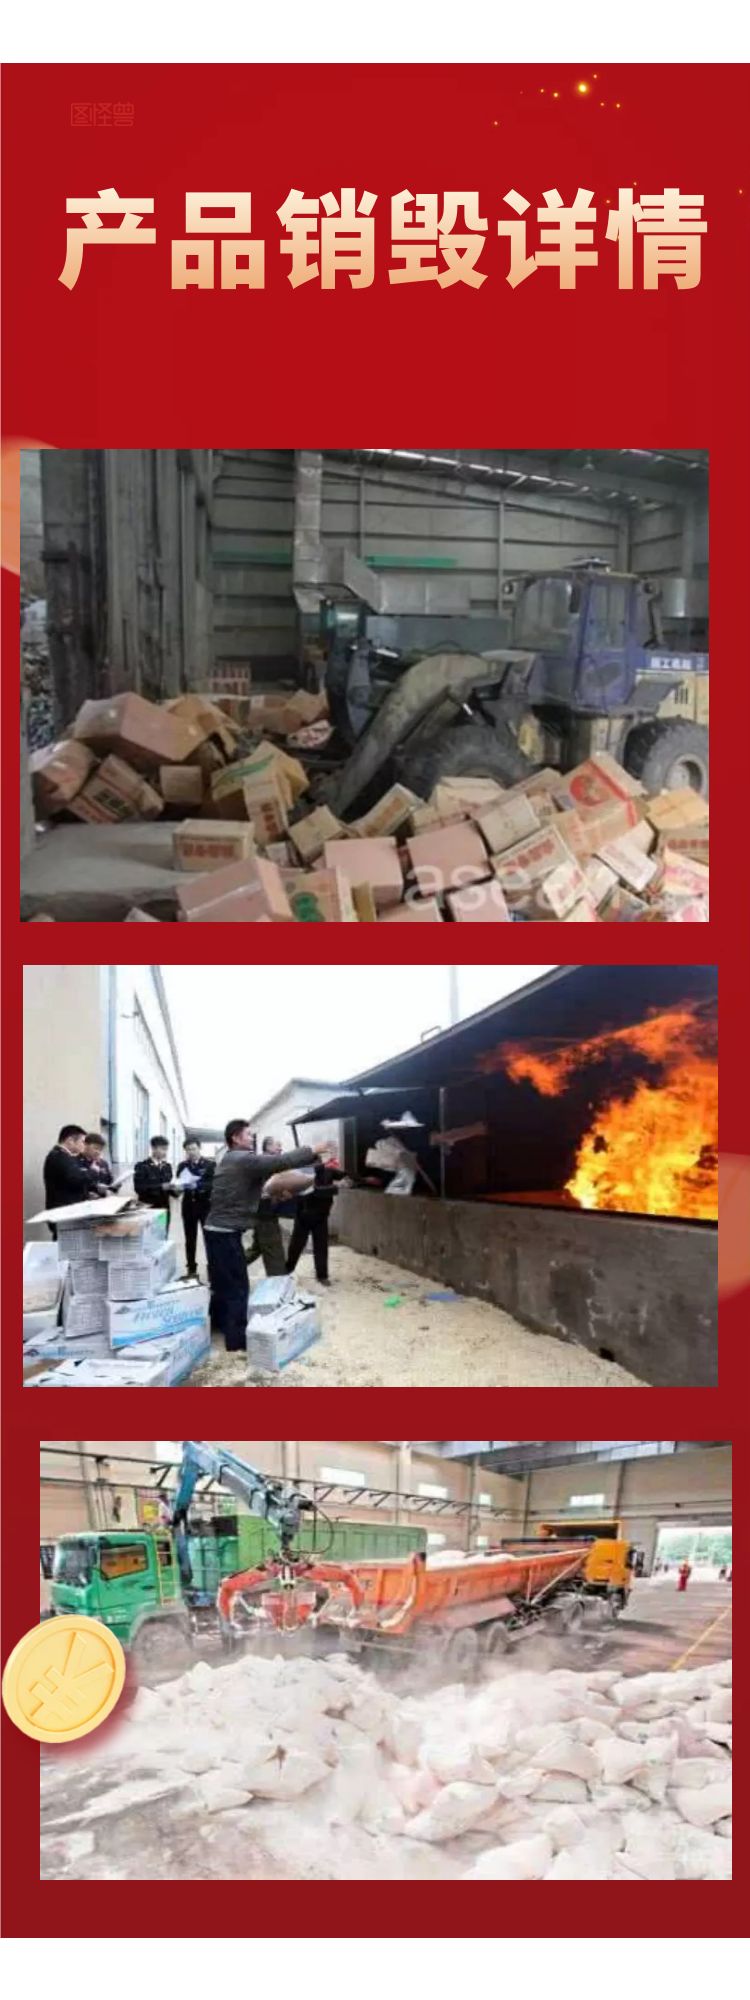 广州荔湾区报废废弃日化品销毁单位当日现场焚烧完成